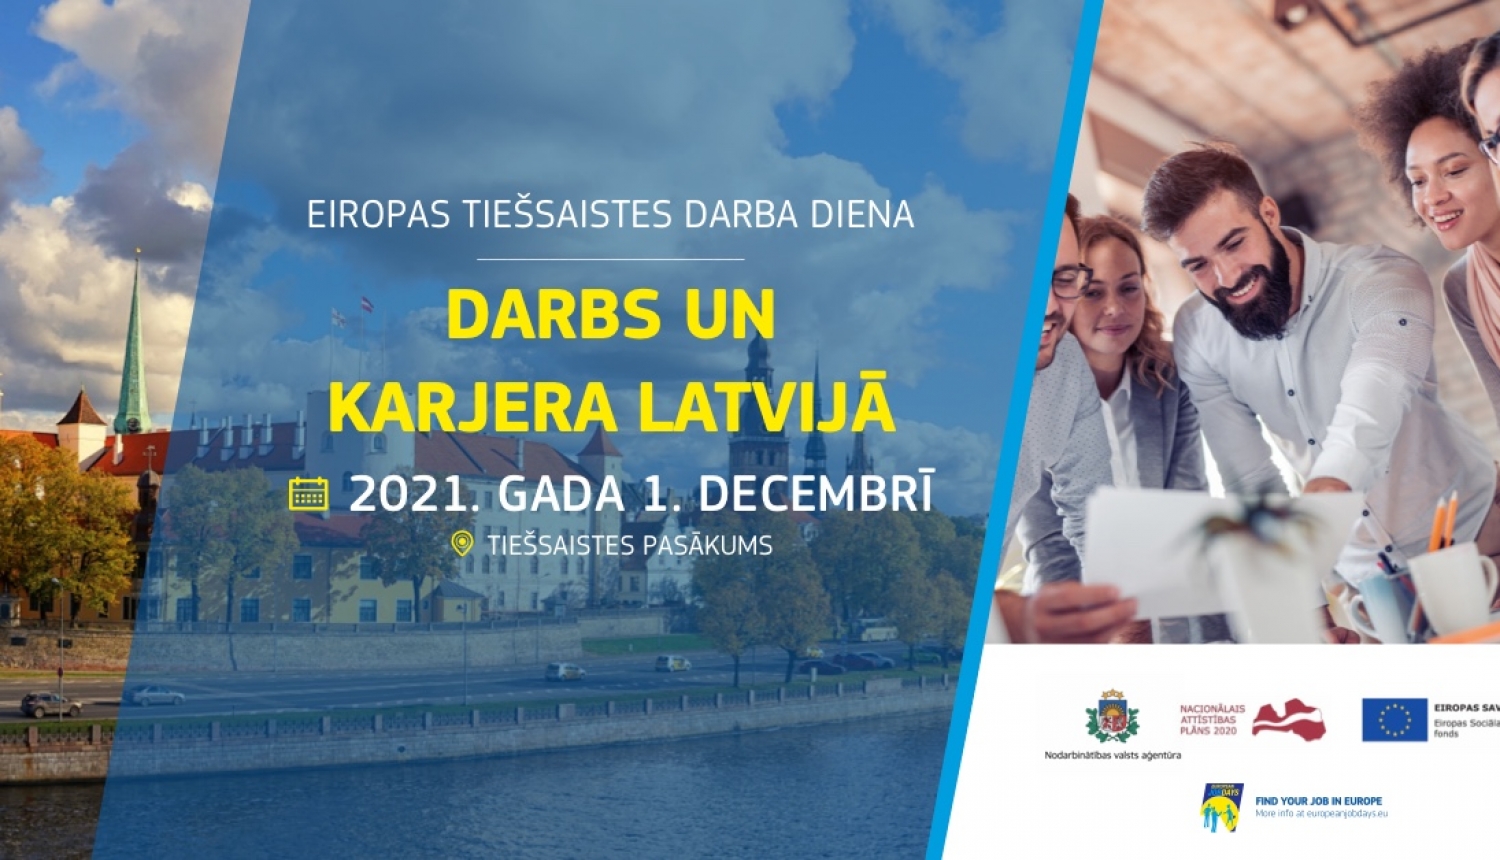 Darba devējus, kuri meklē darbiniekus, aicinām pieteikties dalībai NVA un EURES tiešsaistes darba dienā "Darbs un karjera Latvijā"